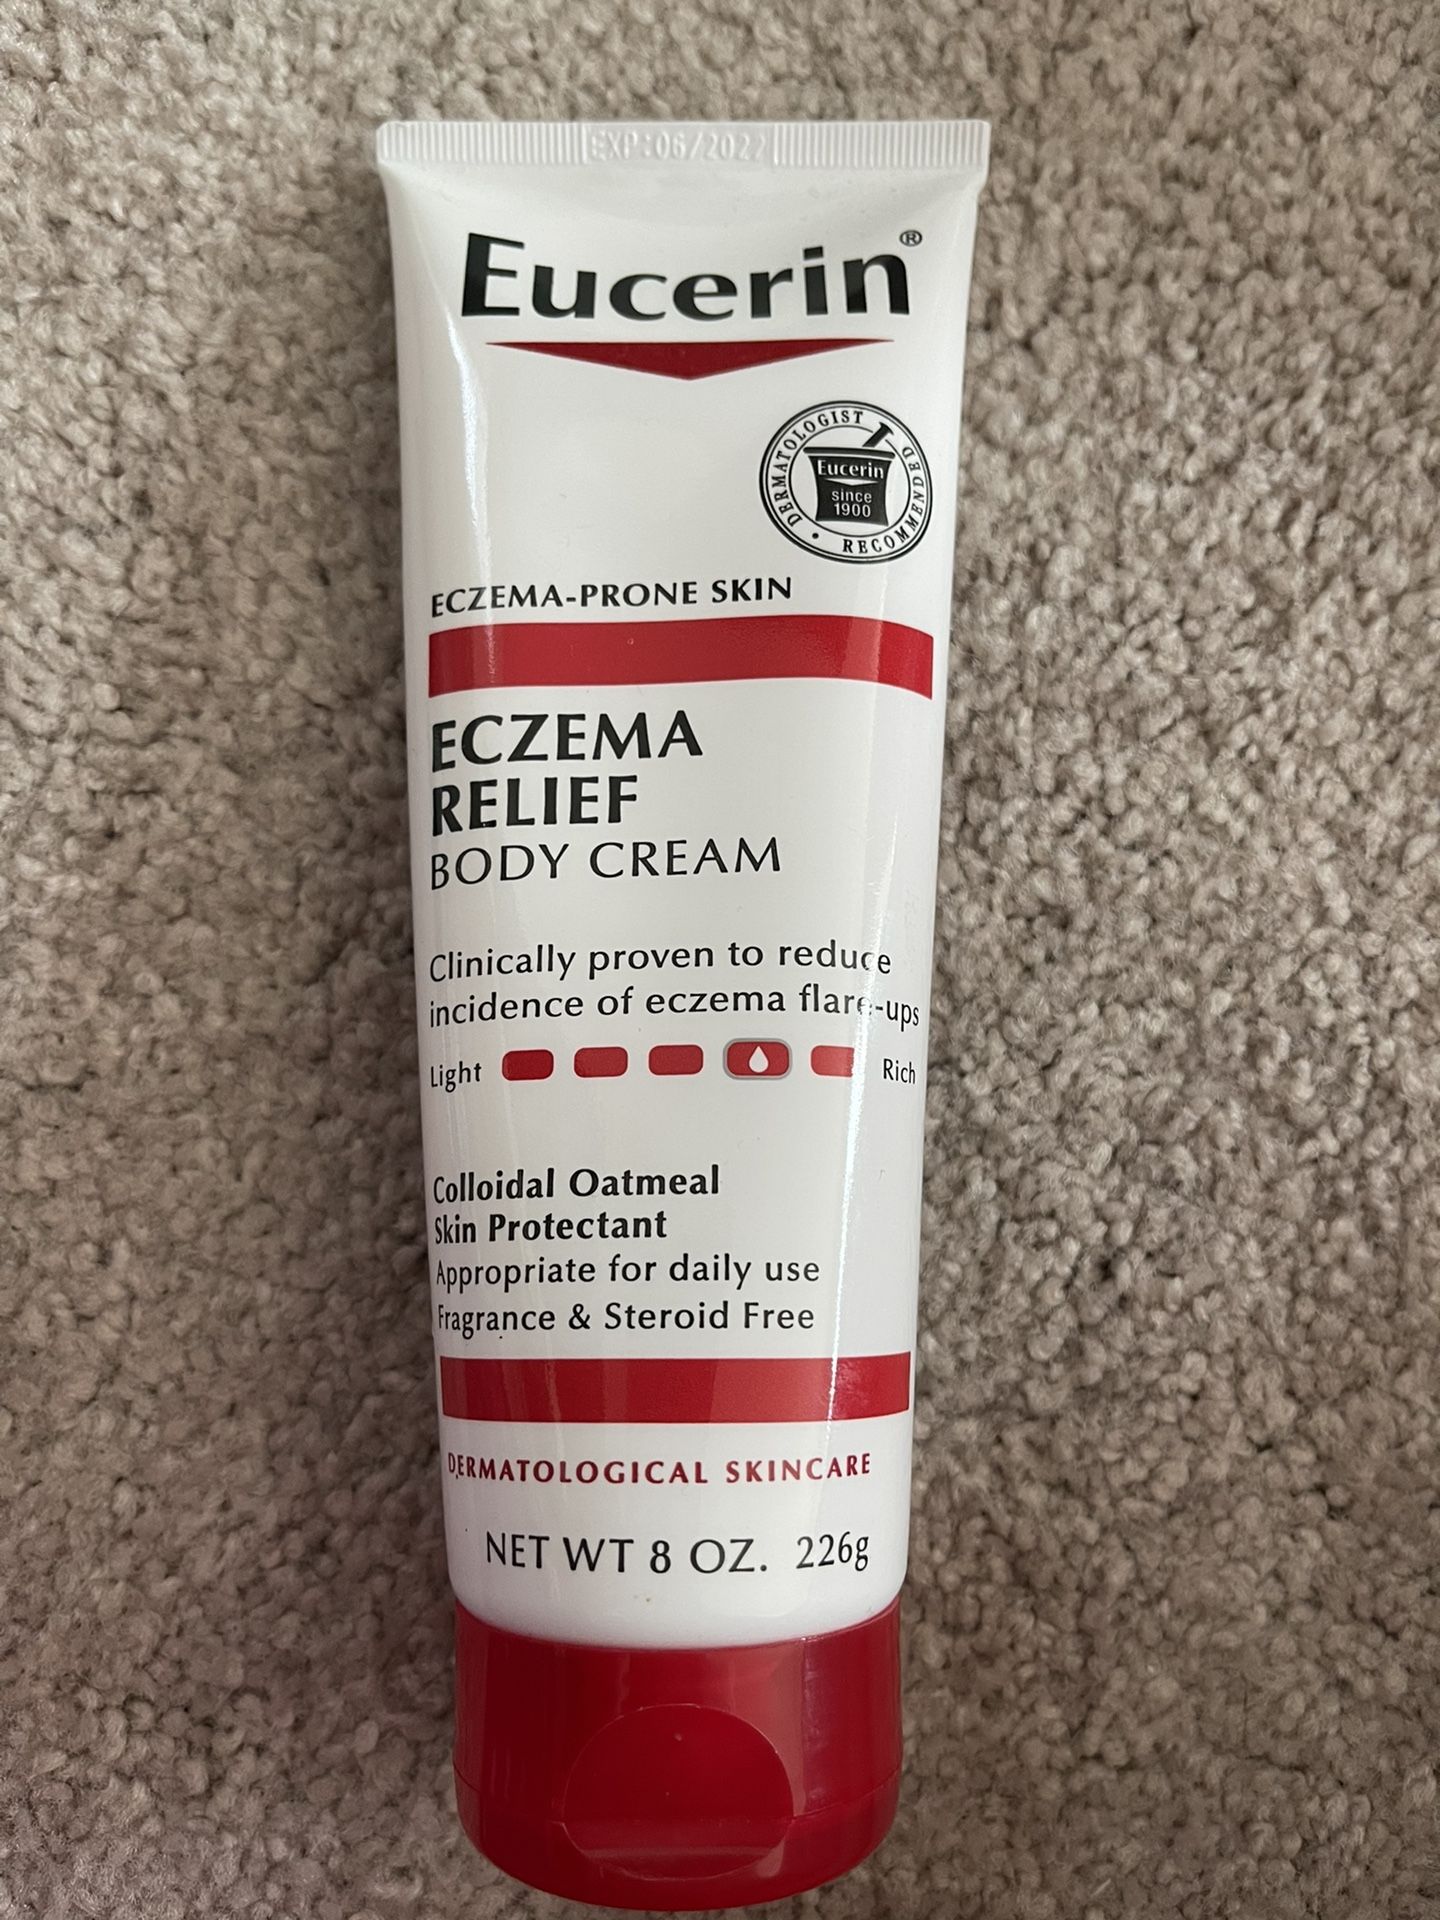 Eucerin Eczema-Prone Skin (Eczema Relief Body Cream)